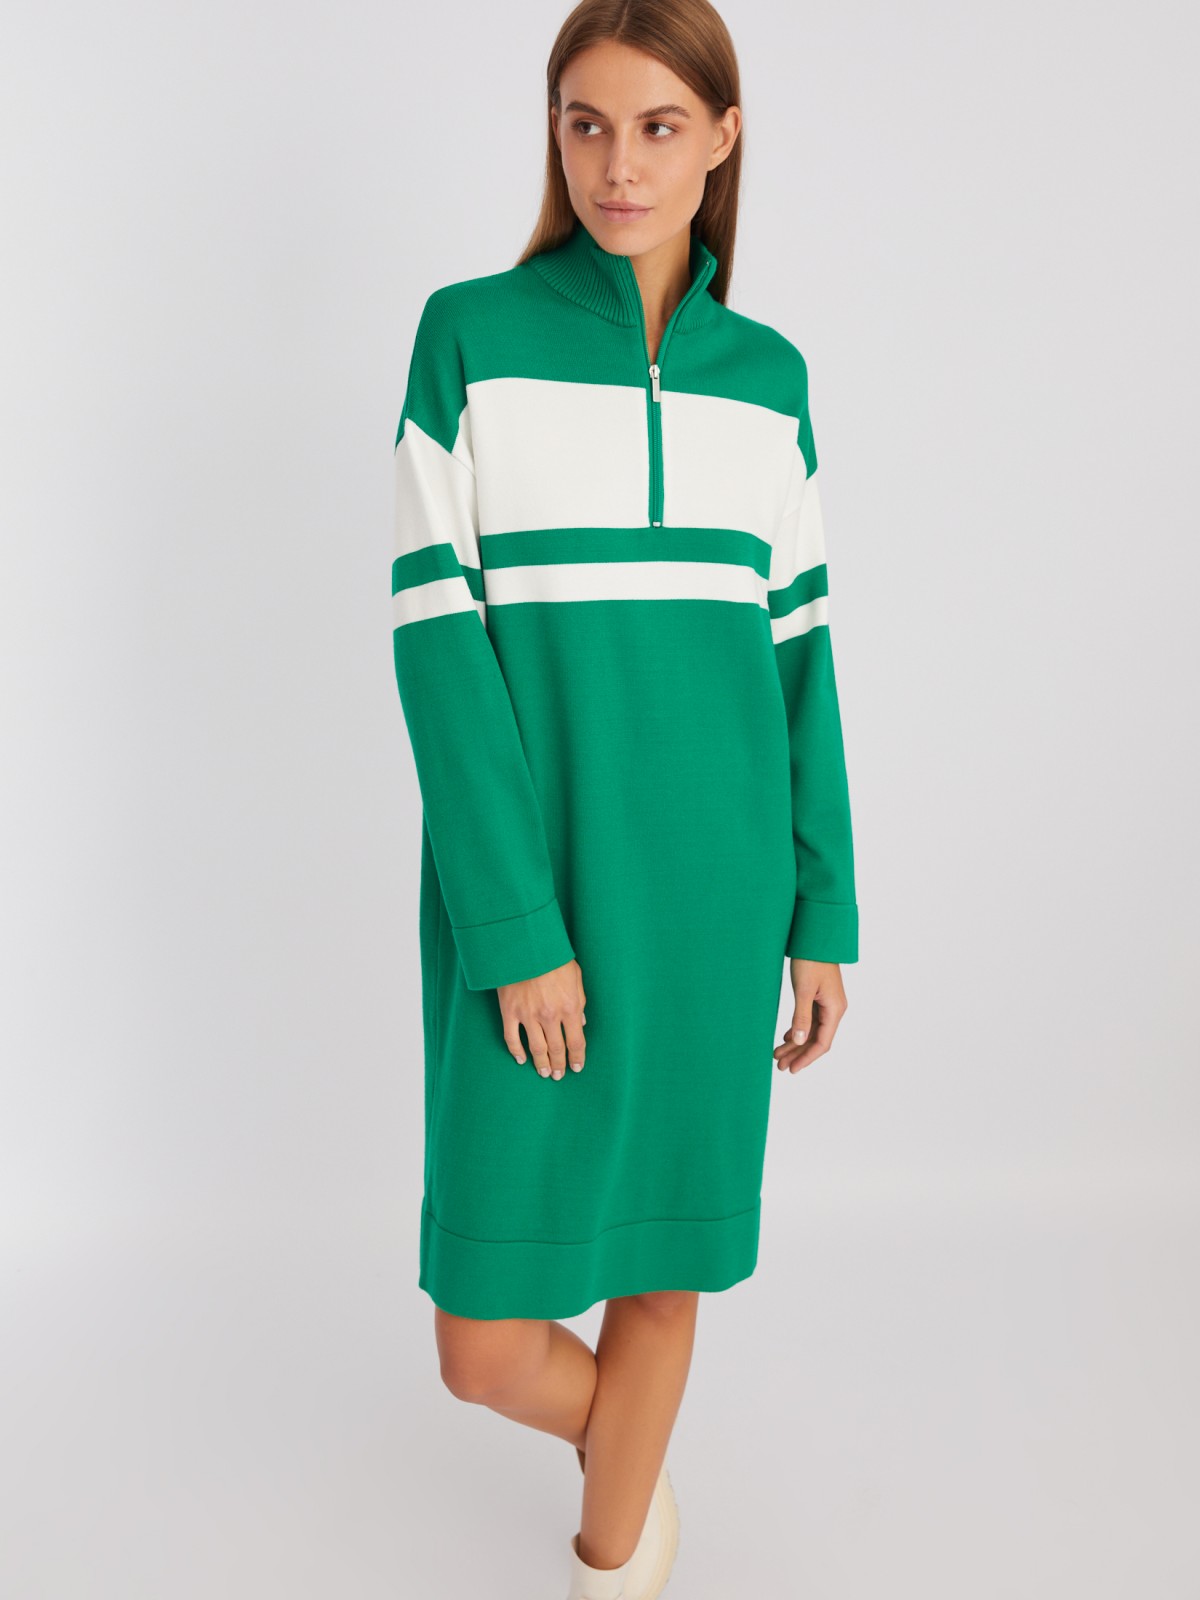 Трикотажное платье-свитер с высоким горлом на молнии zolla Z23428442051, цвет зеленый, размер XS